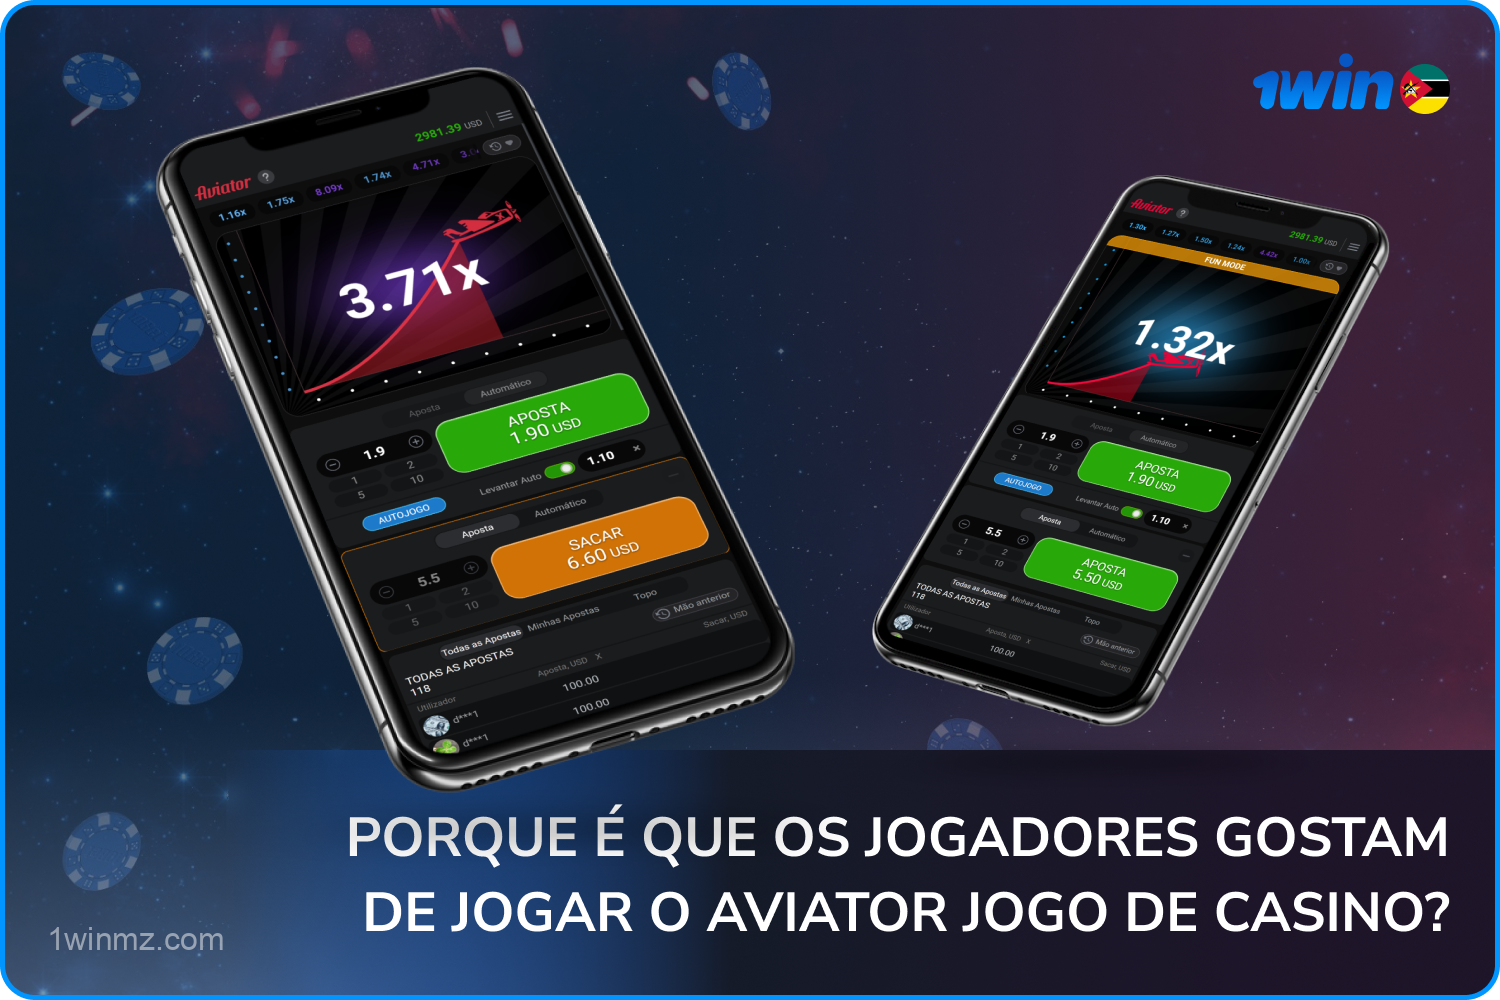 Os usuários do 1win de Moçambique adoram jogar Aviator devido aos recursos divertidos do jogo e às chances justas de ganhar